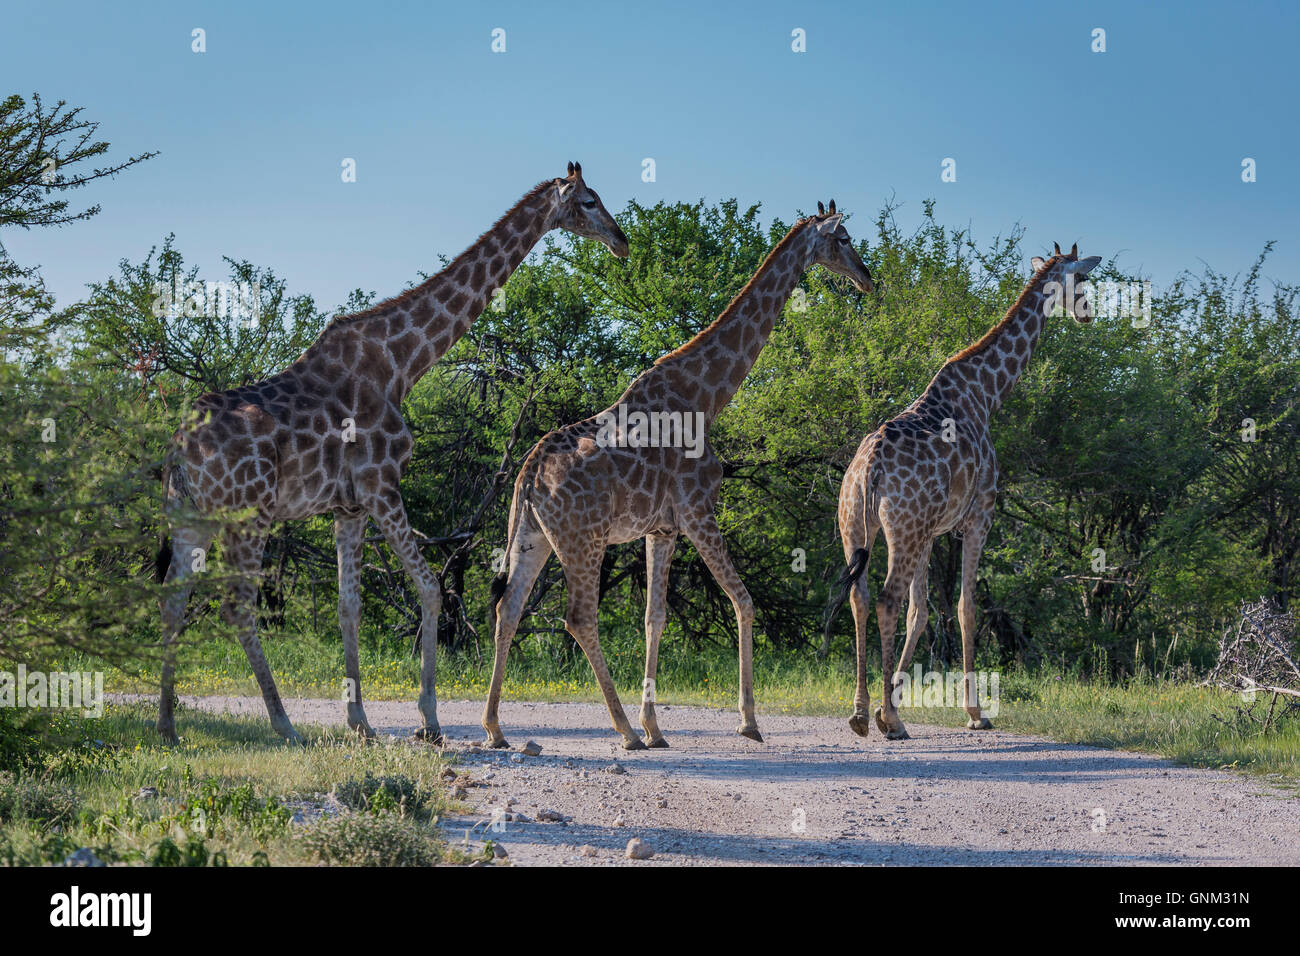 Les Girafes traversant la rue, Etosha National Park, Namibie, Afrique Banque D'Images